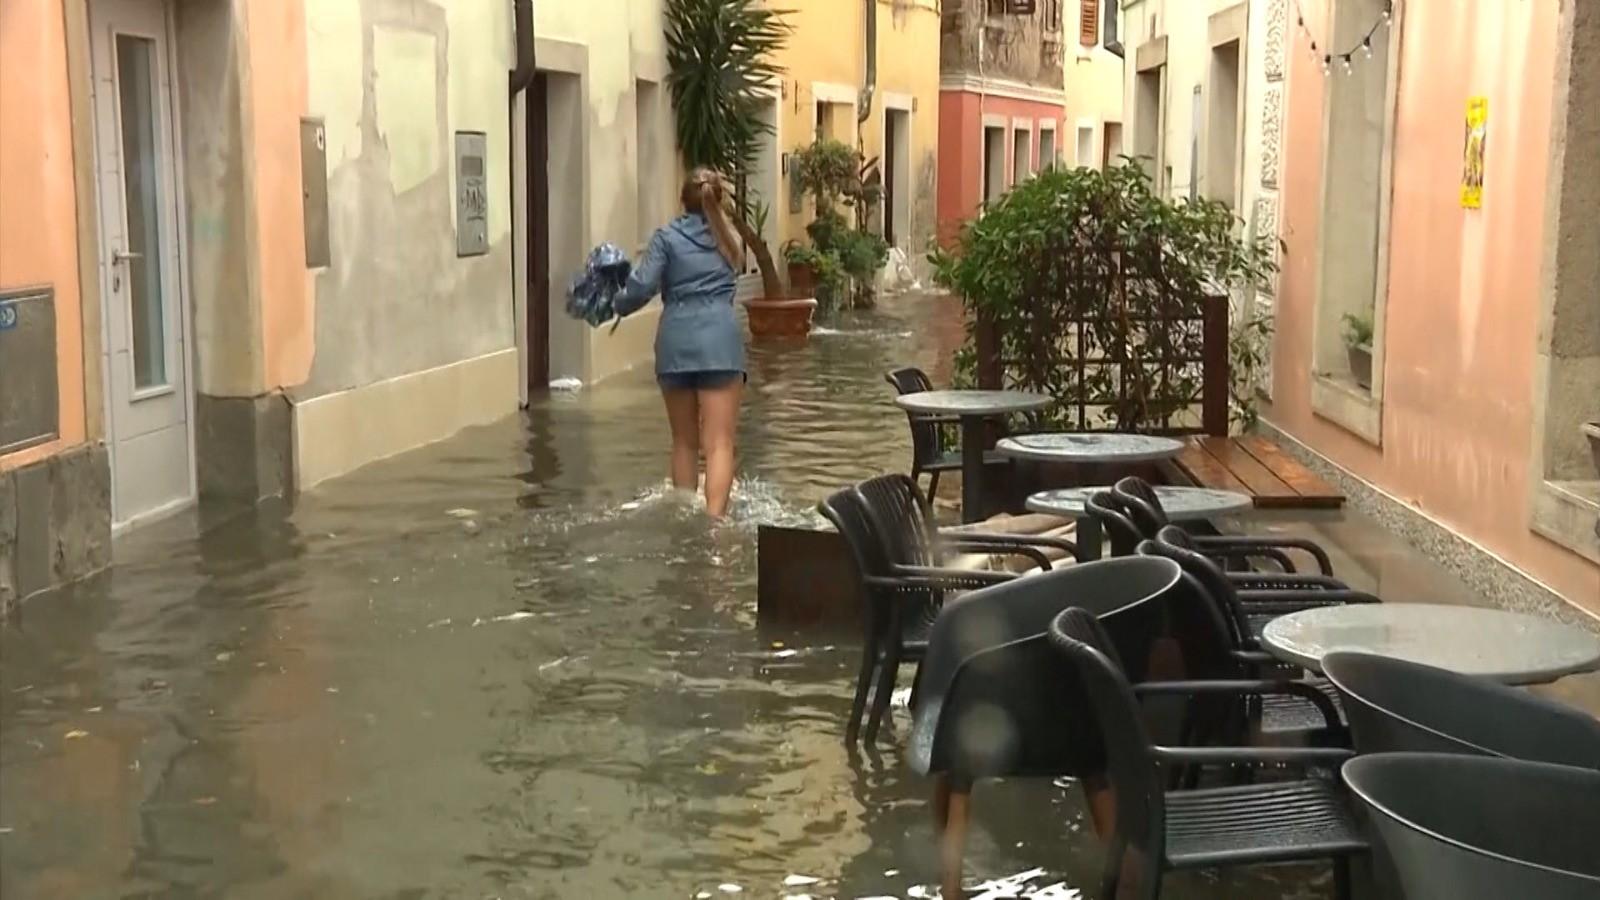 Italia devastata dai temporali: vigili del fuoco, chiamati a più di 100 interventi in 24 ore.  Problemi anche in Slovenia e sono ricominciati gli incendi in Grecia